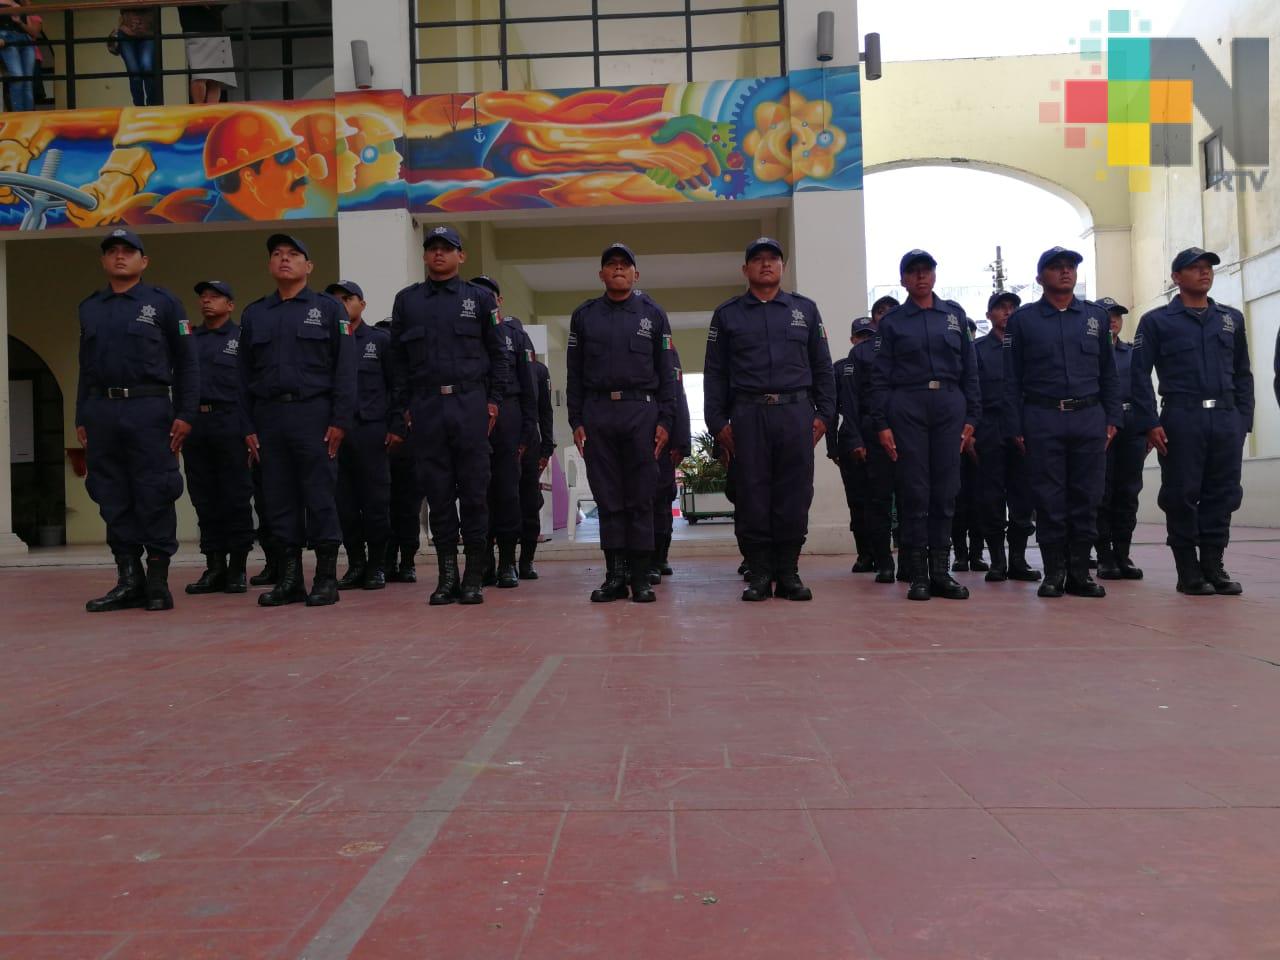 Reclutamiento para la Policía municipal en Coatzacoalcos estará abierto durante el año